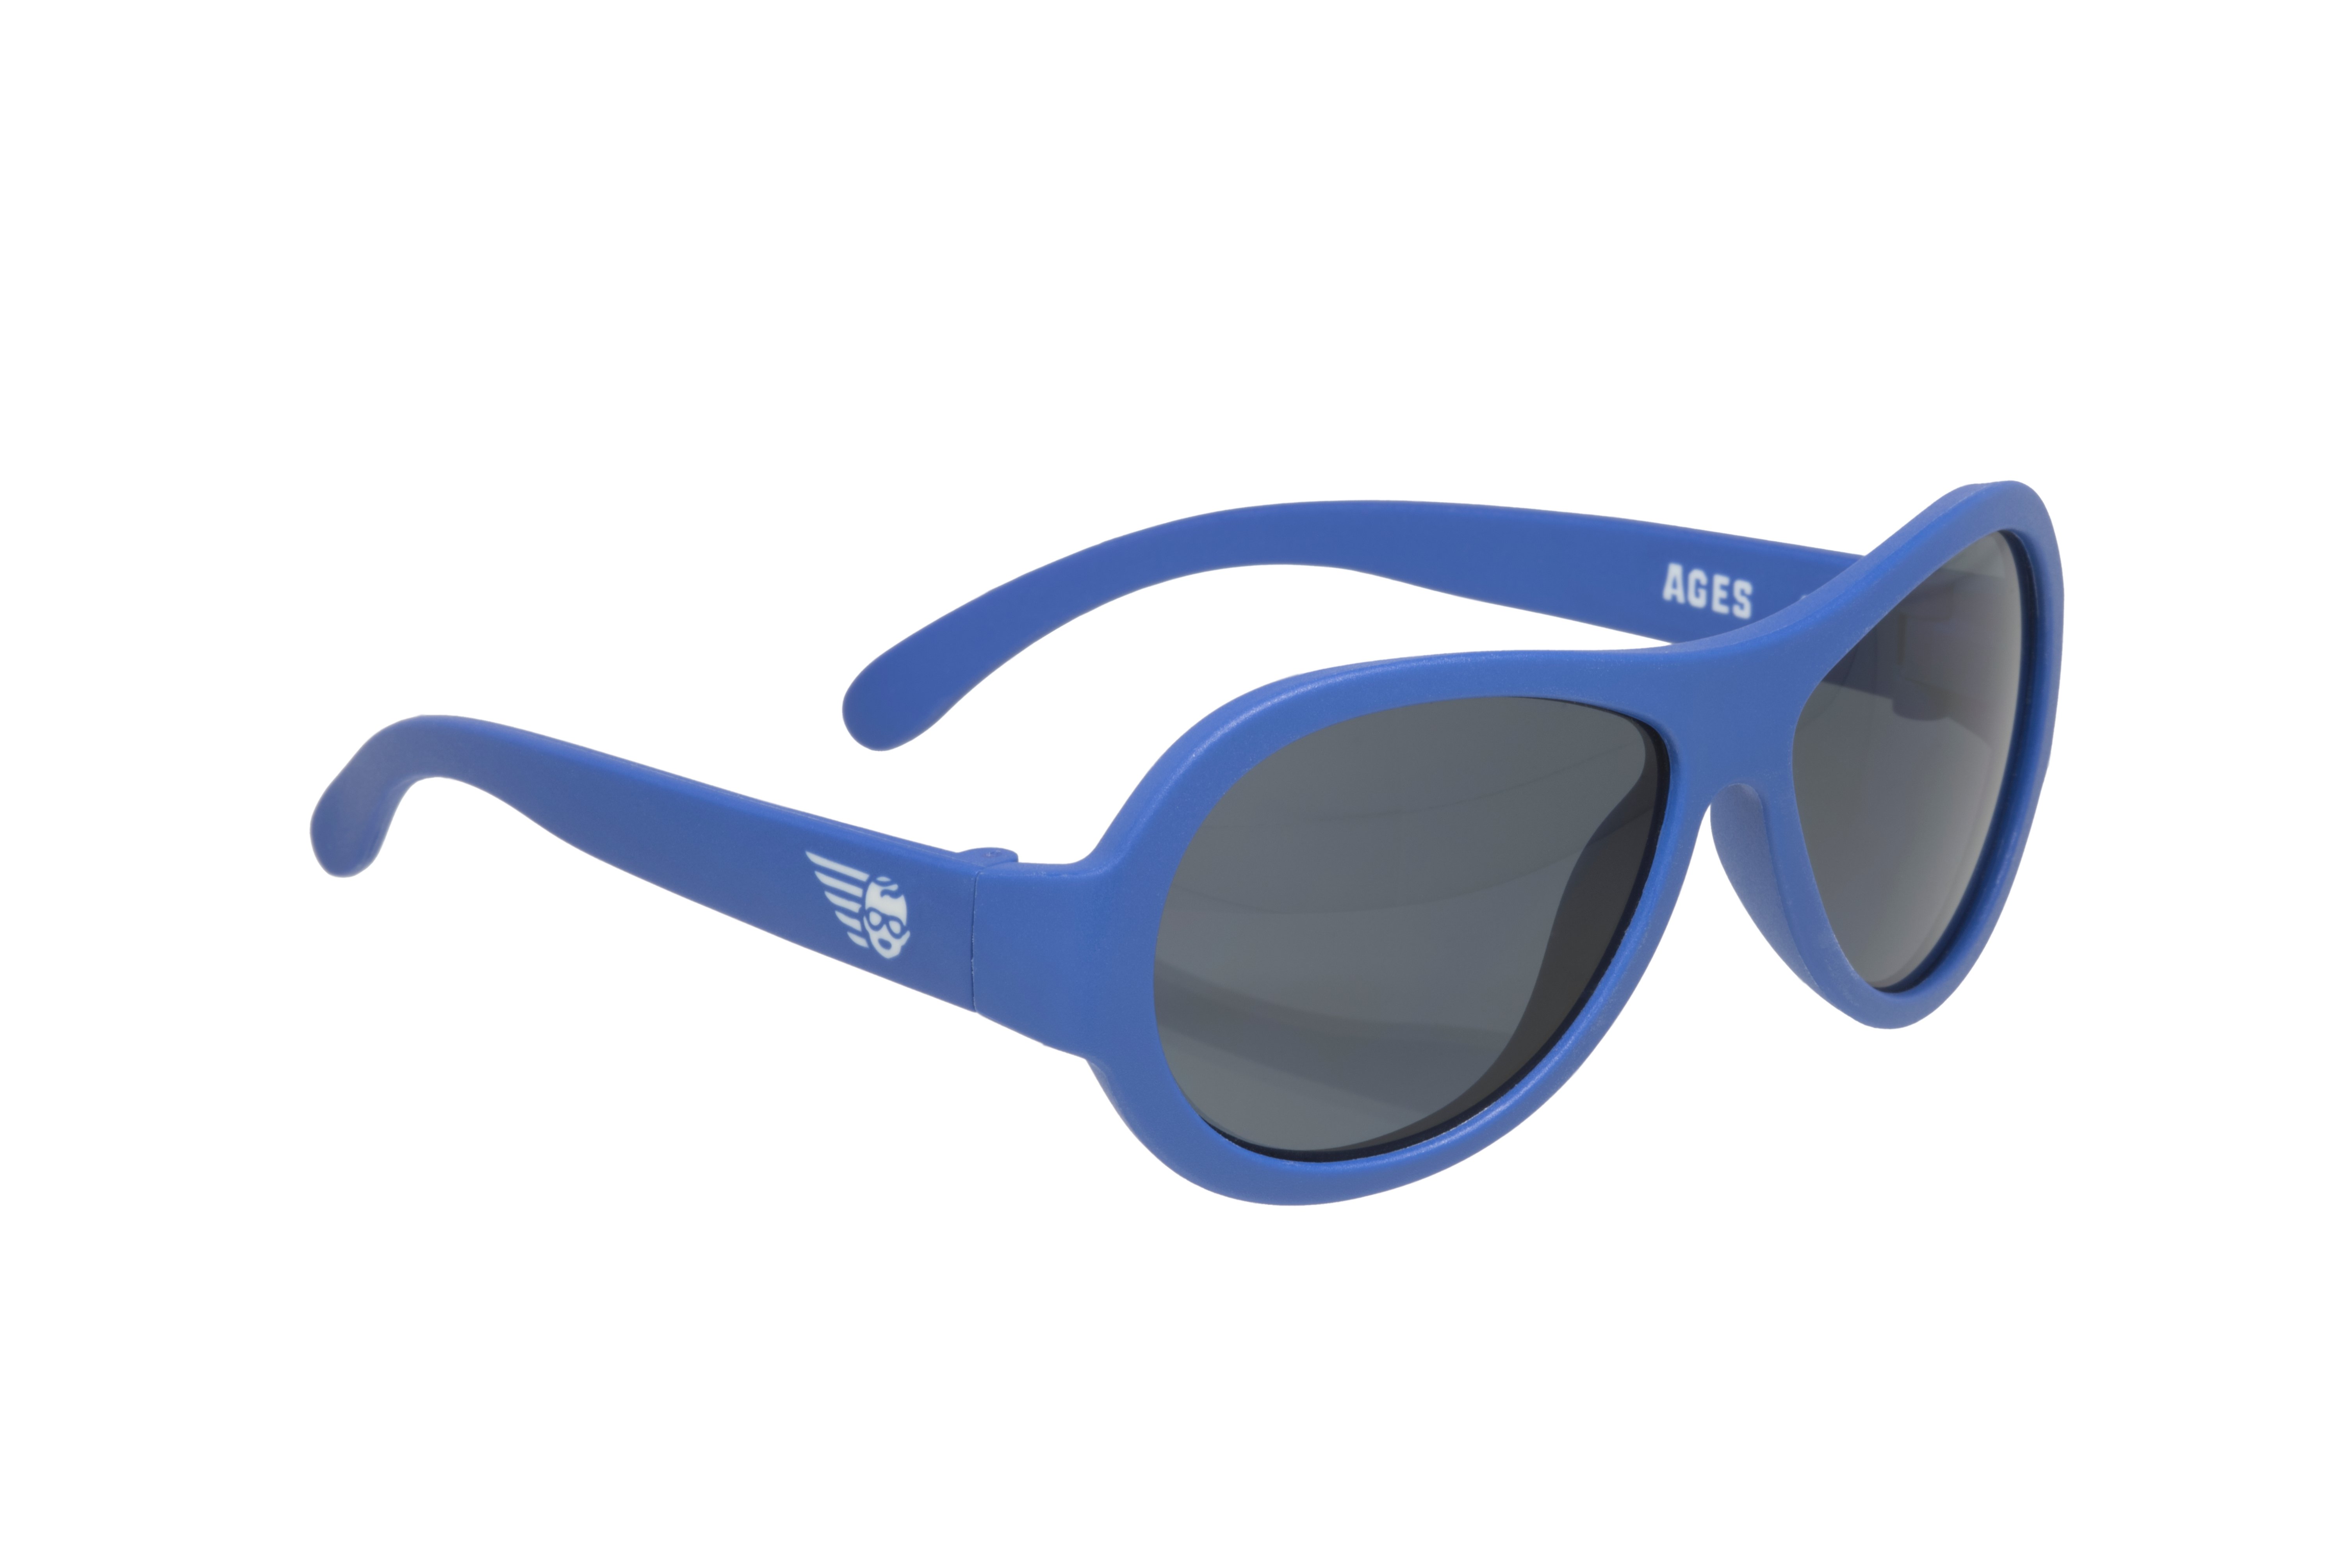 Babiators, Okulary przeciwsłoneczne dla dzieci Classic True Blue 0-3